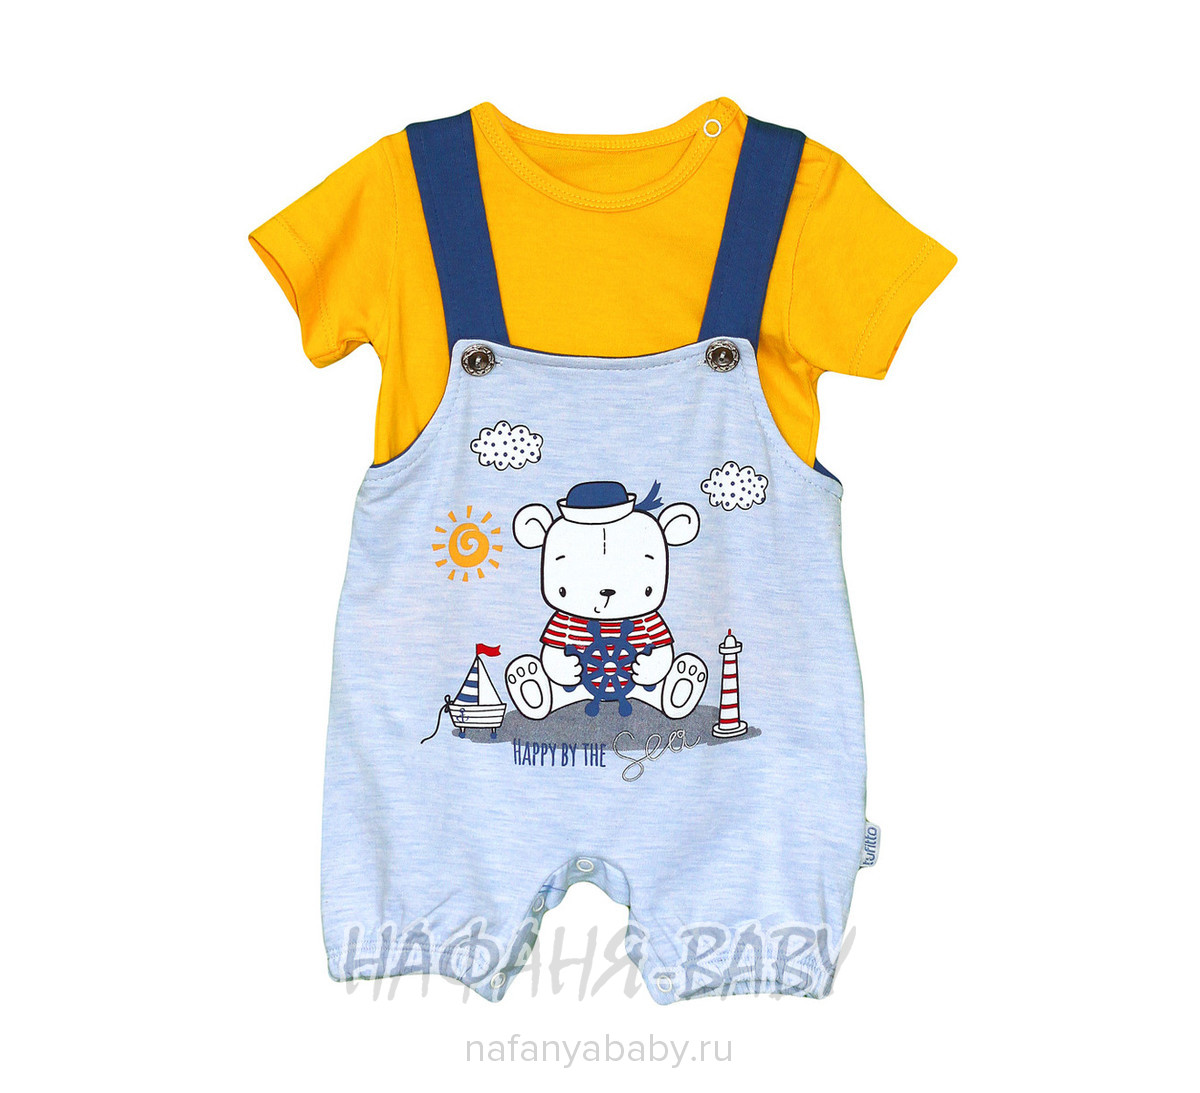 Детский костюм (футболка+песочник) TUFITTO, купить в интернет магазине Нафаня. арт: 876.